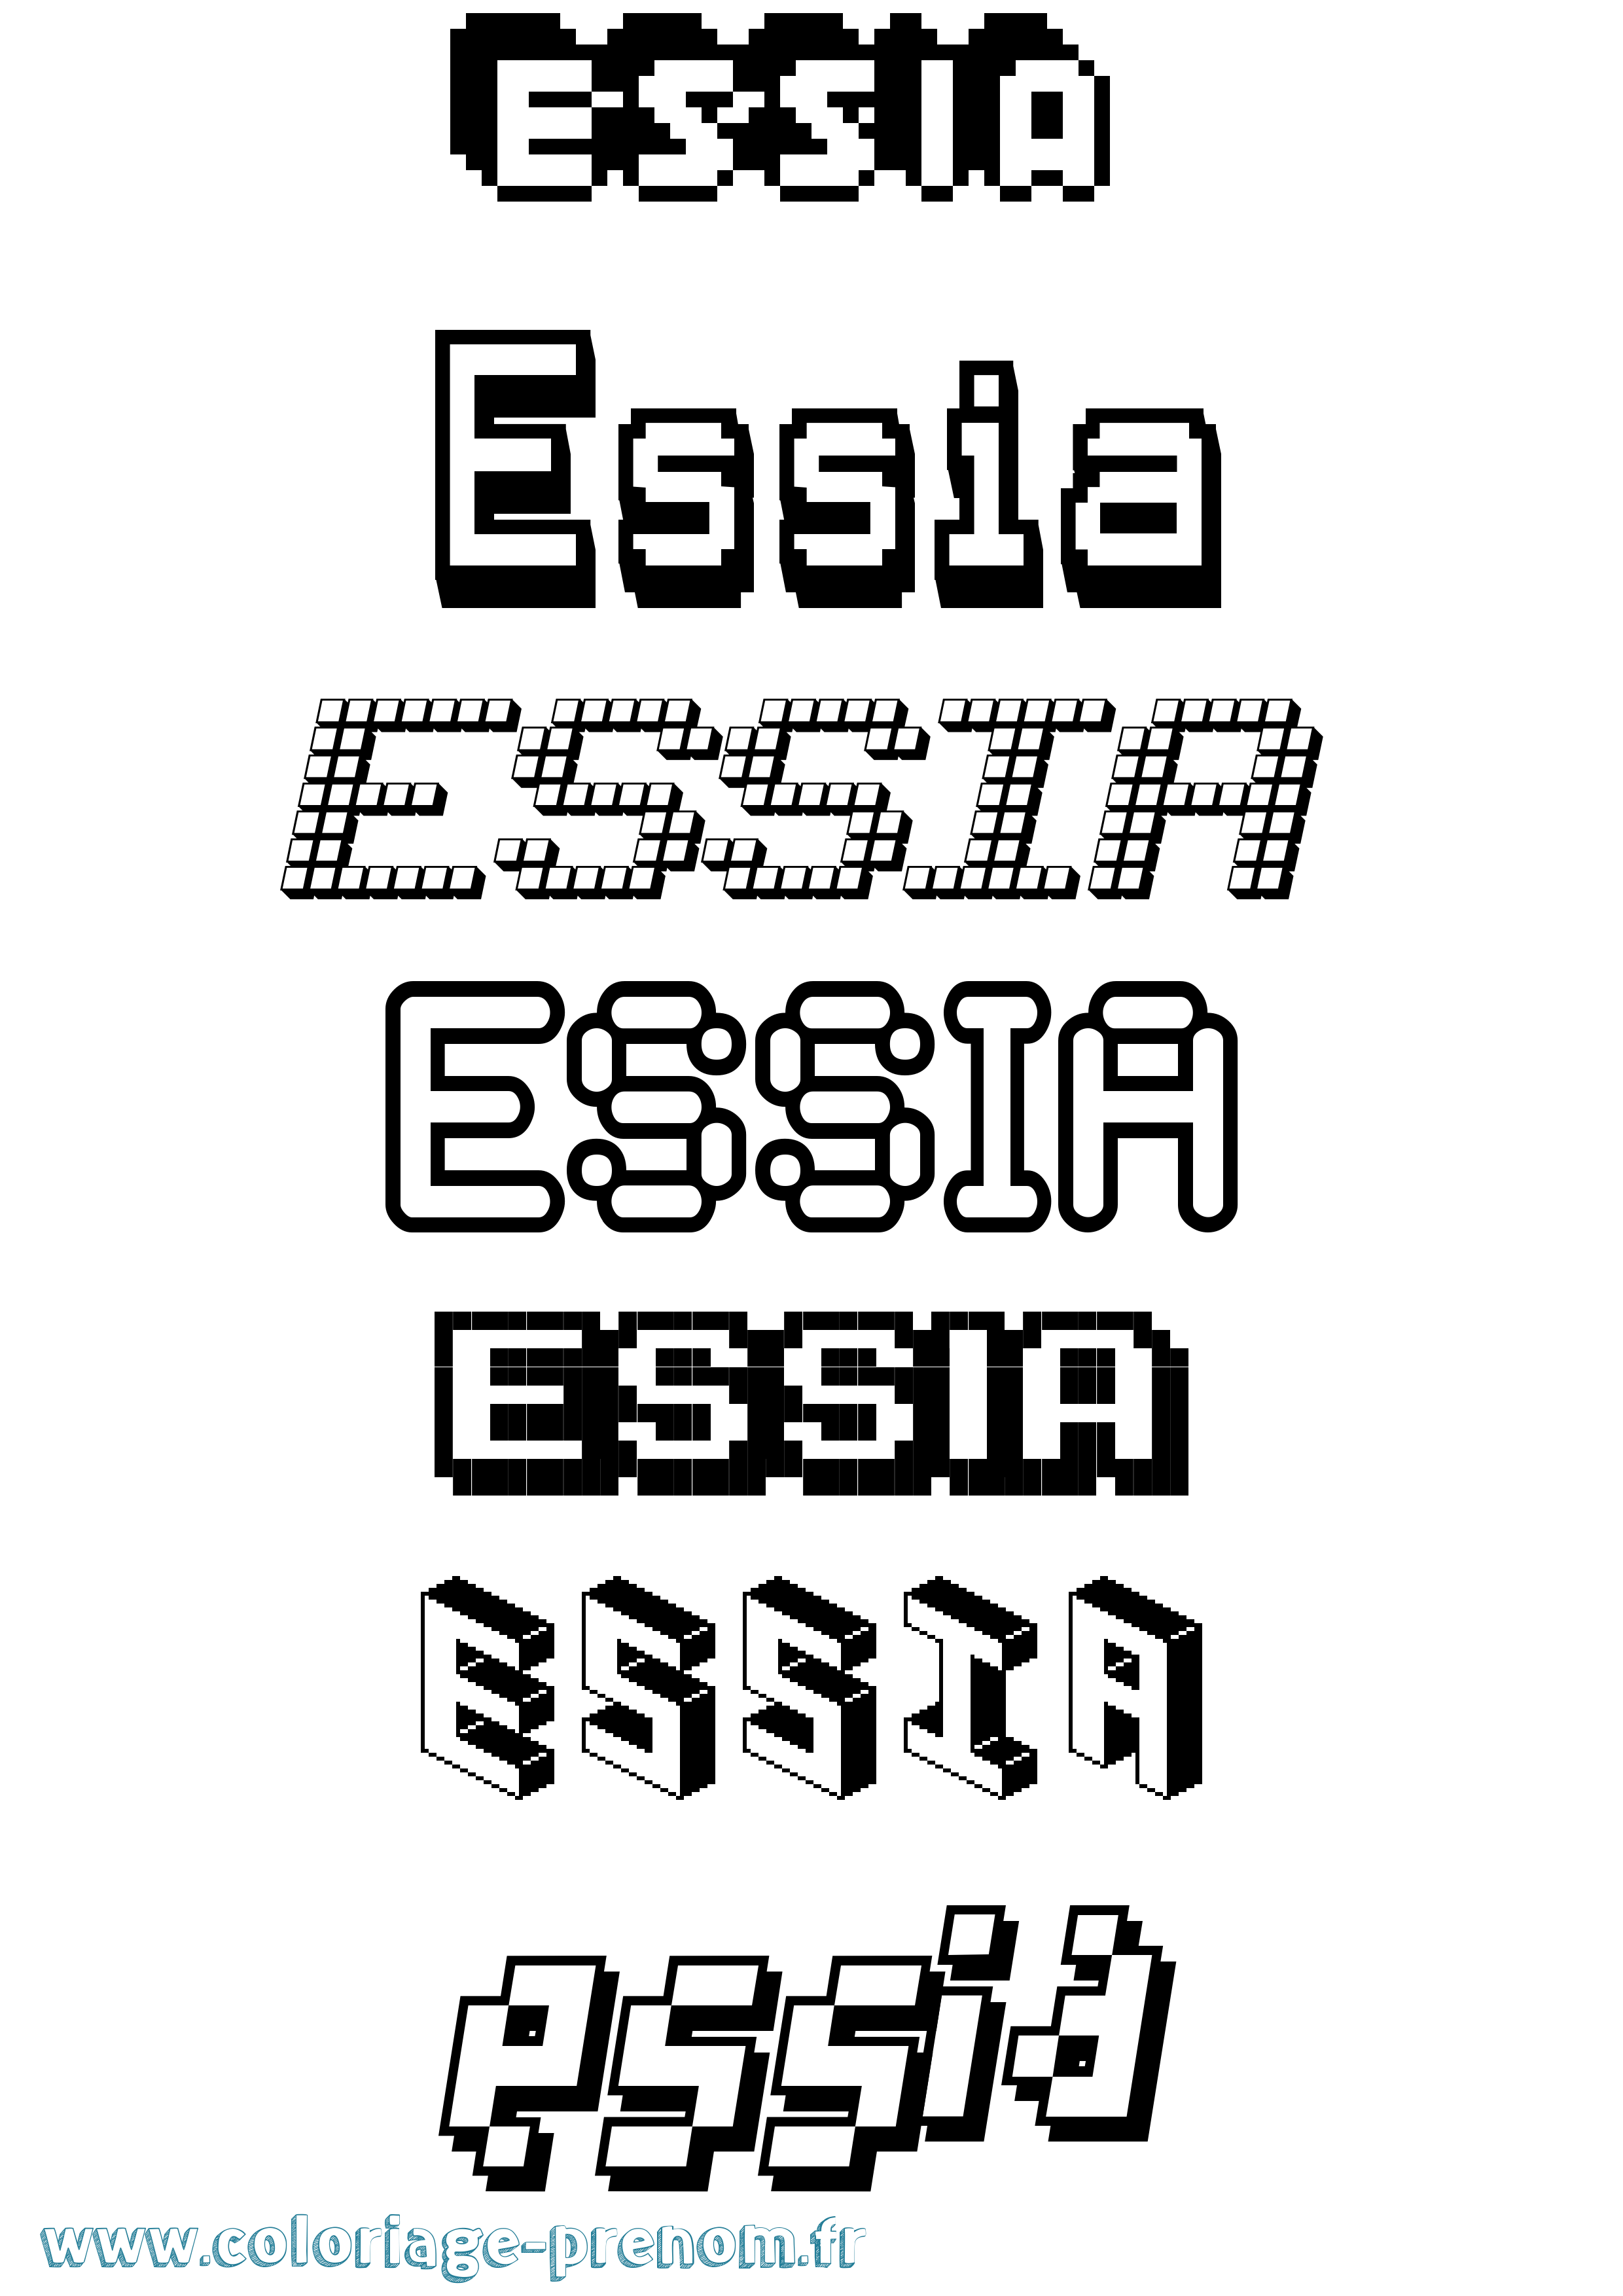 Coloriage prénom Essia Pixel